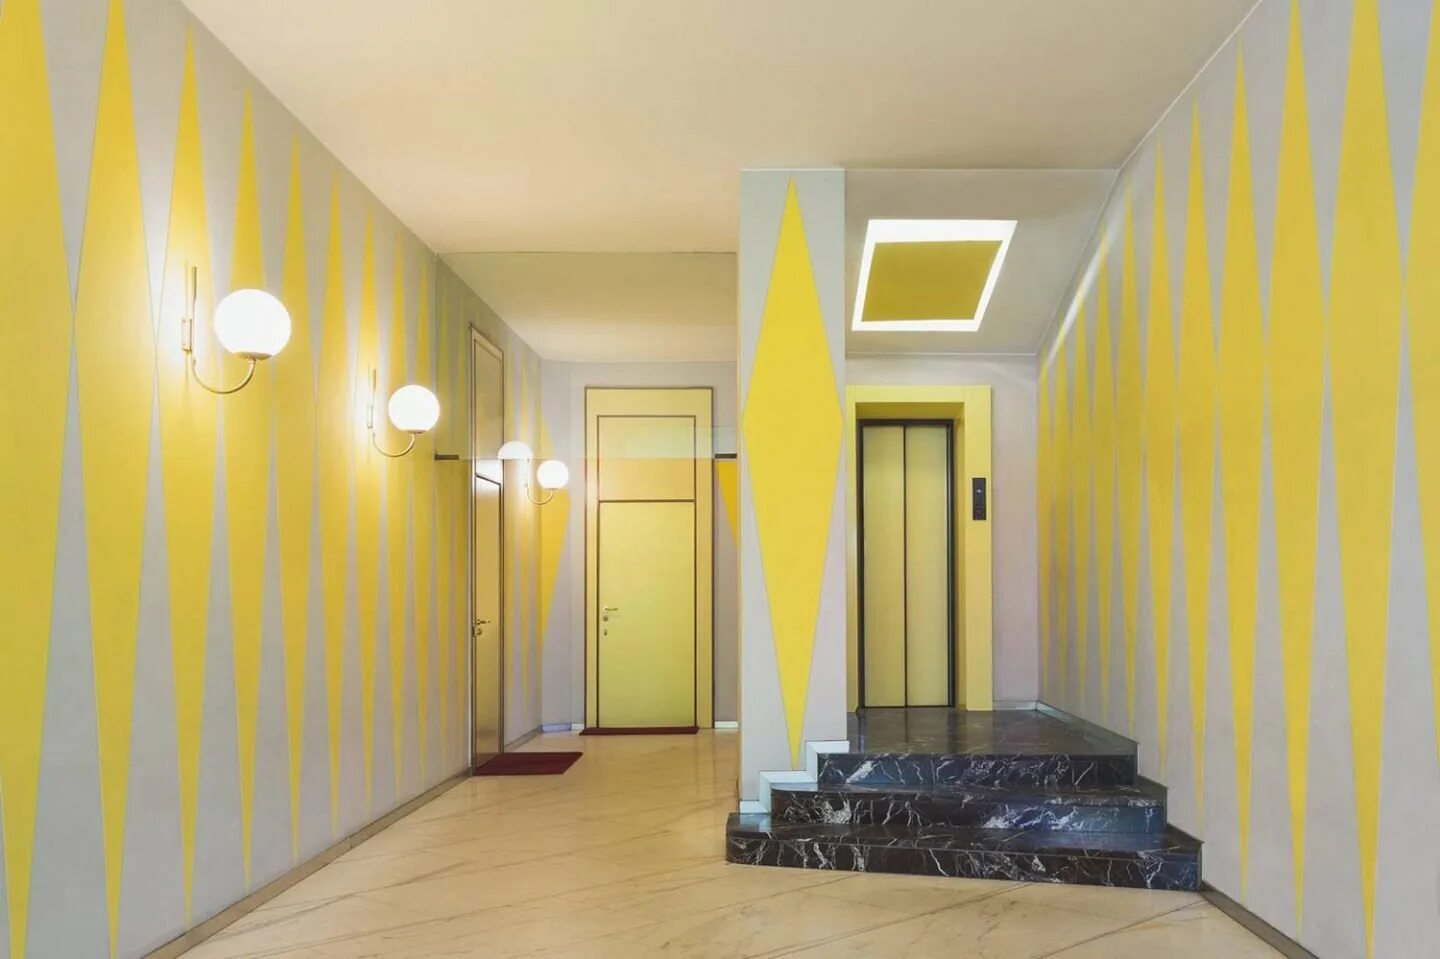 Какой подъезд и какая квартира. Цвет стен в коридоре. Красивые подъезды многоквартирных домов. Желтый интерьер. Желтая стена.